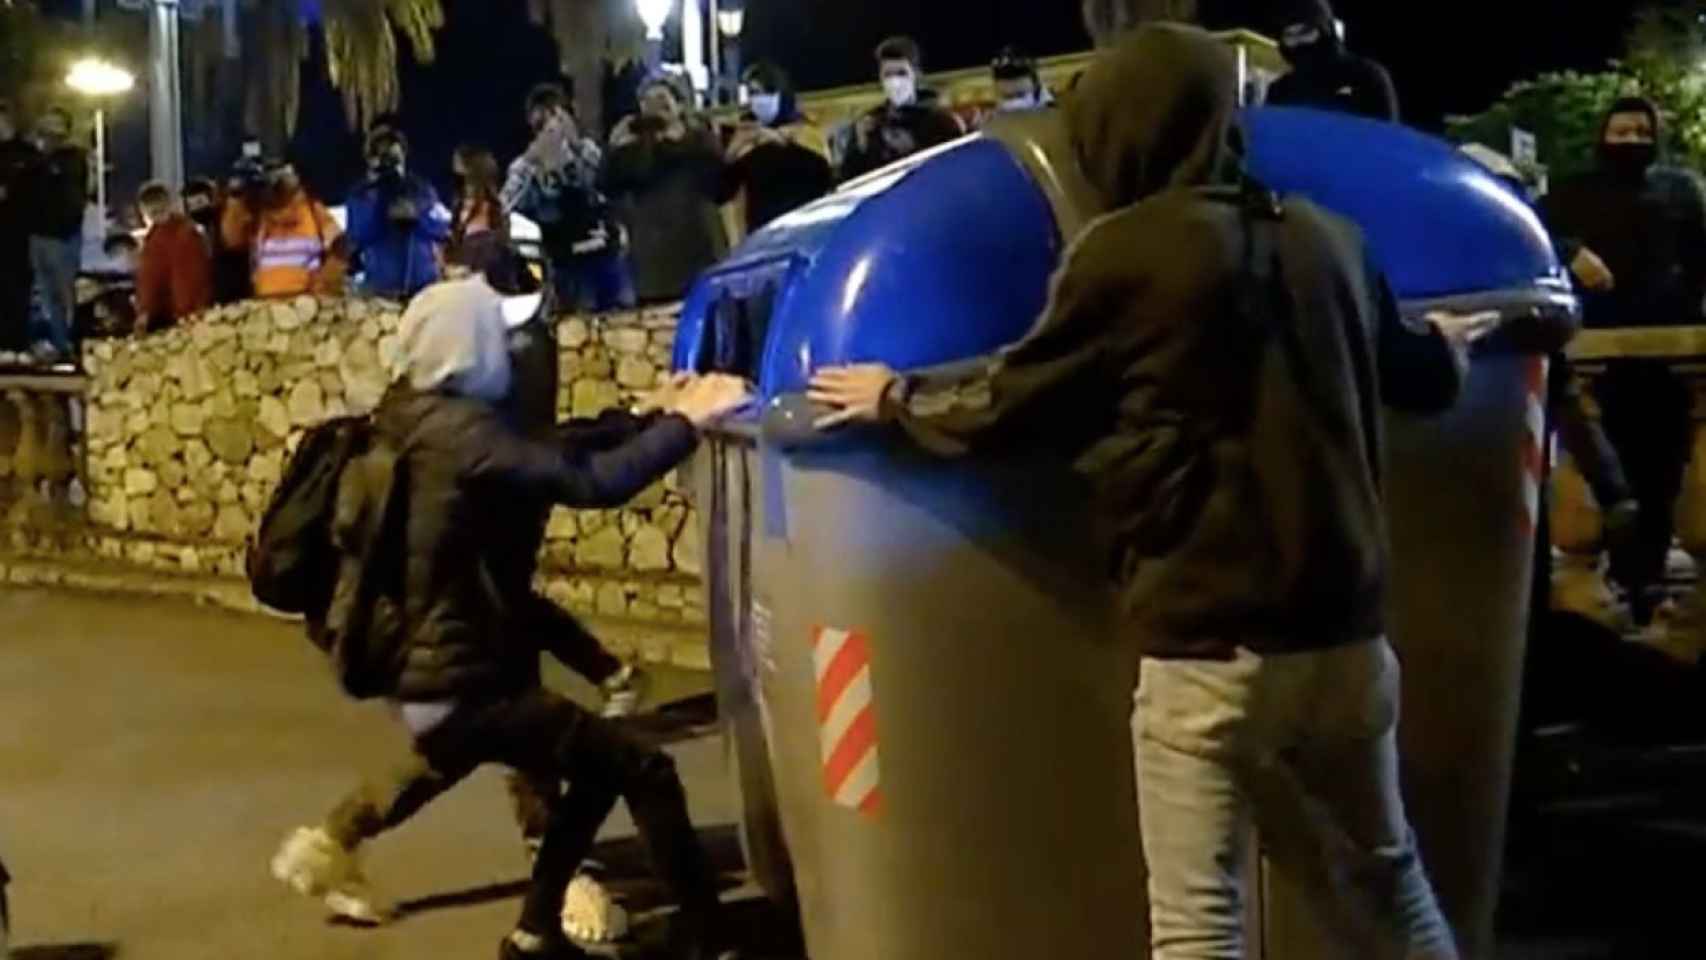 Un grupo de jóvenes lanza un contenedor al suelo en la Barceloneta / BETEVÉ